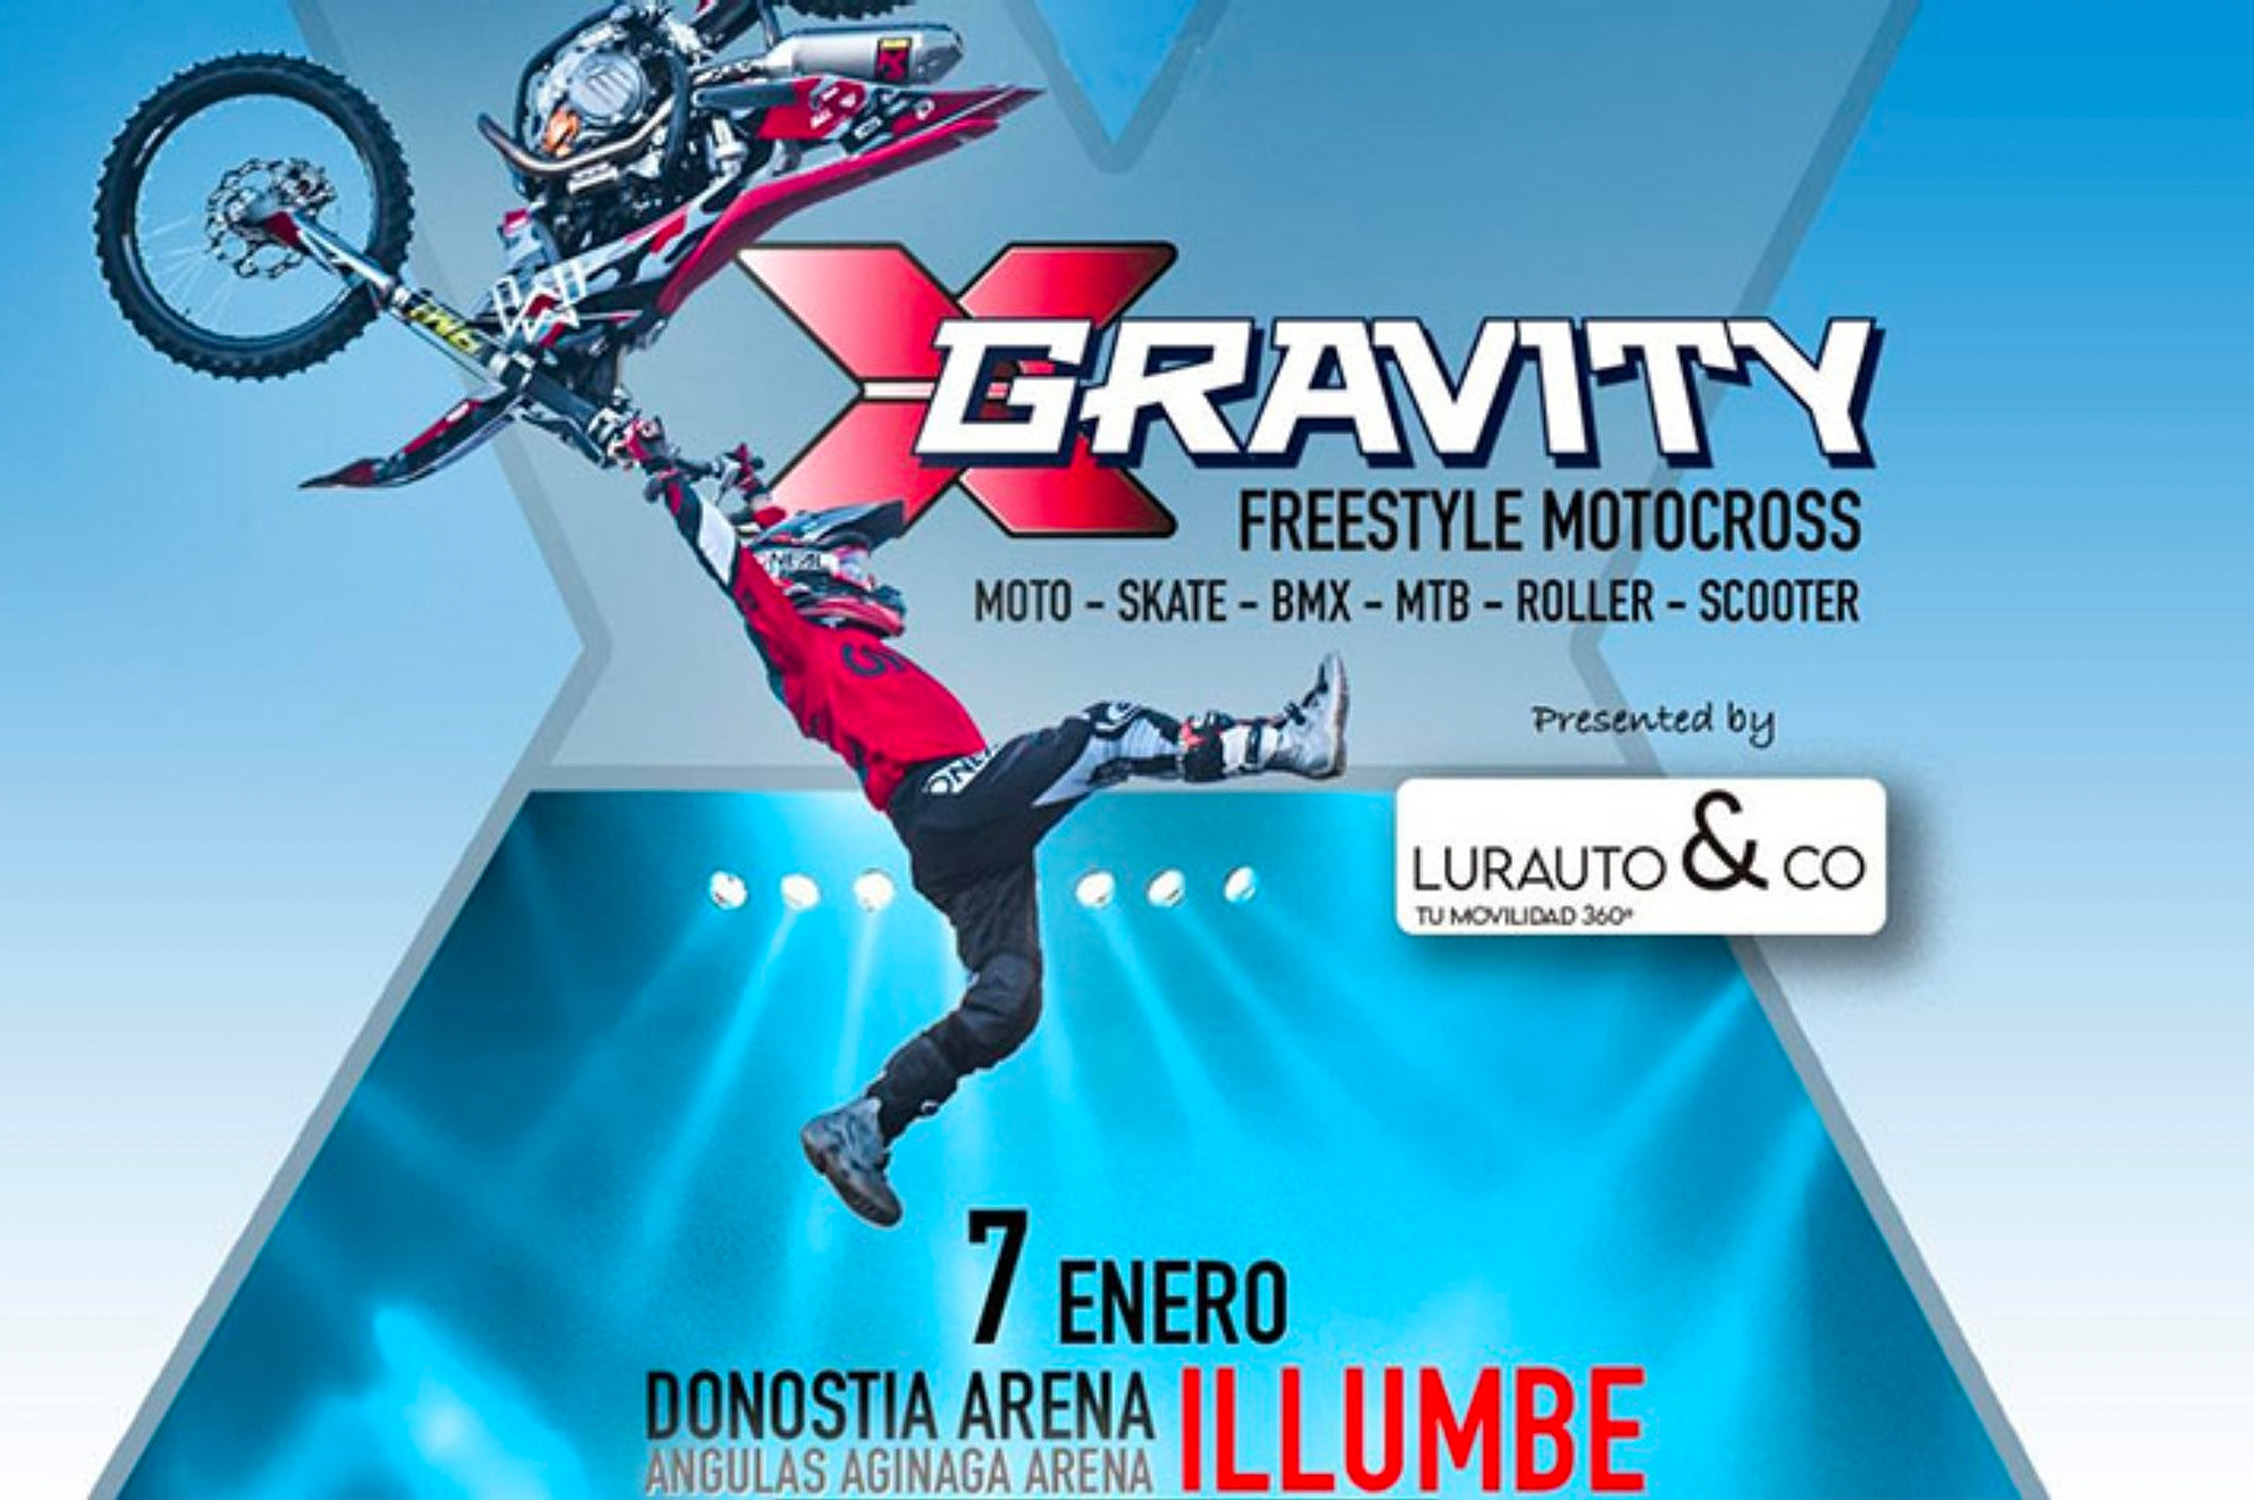 Lurauto&Co patrocinador principal de la primera edición en Donostia del X-Gravity Freestyle